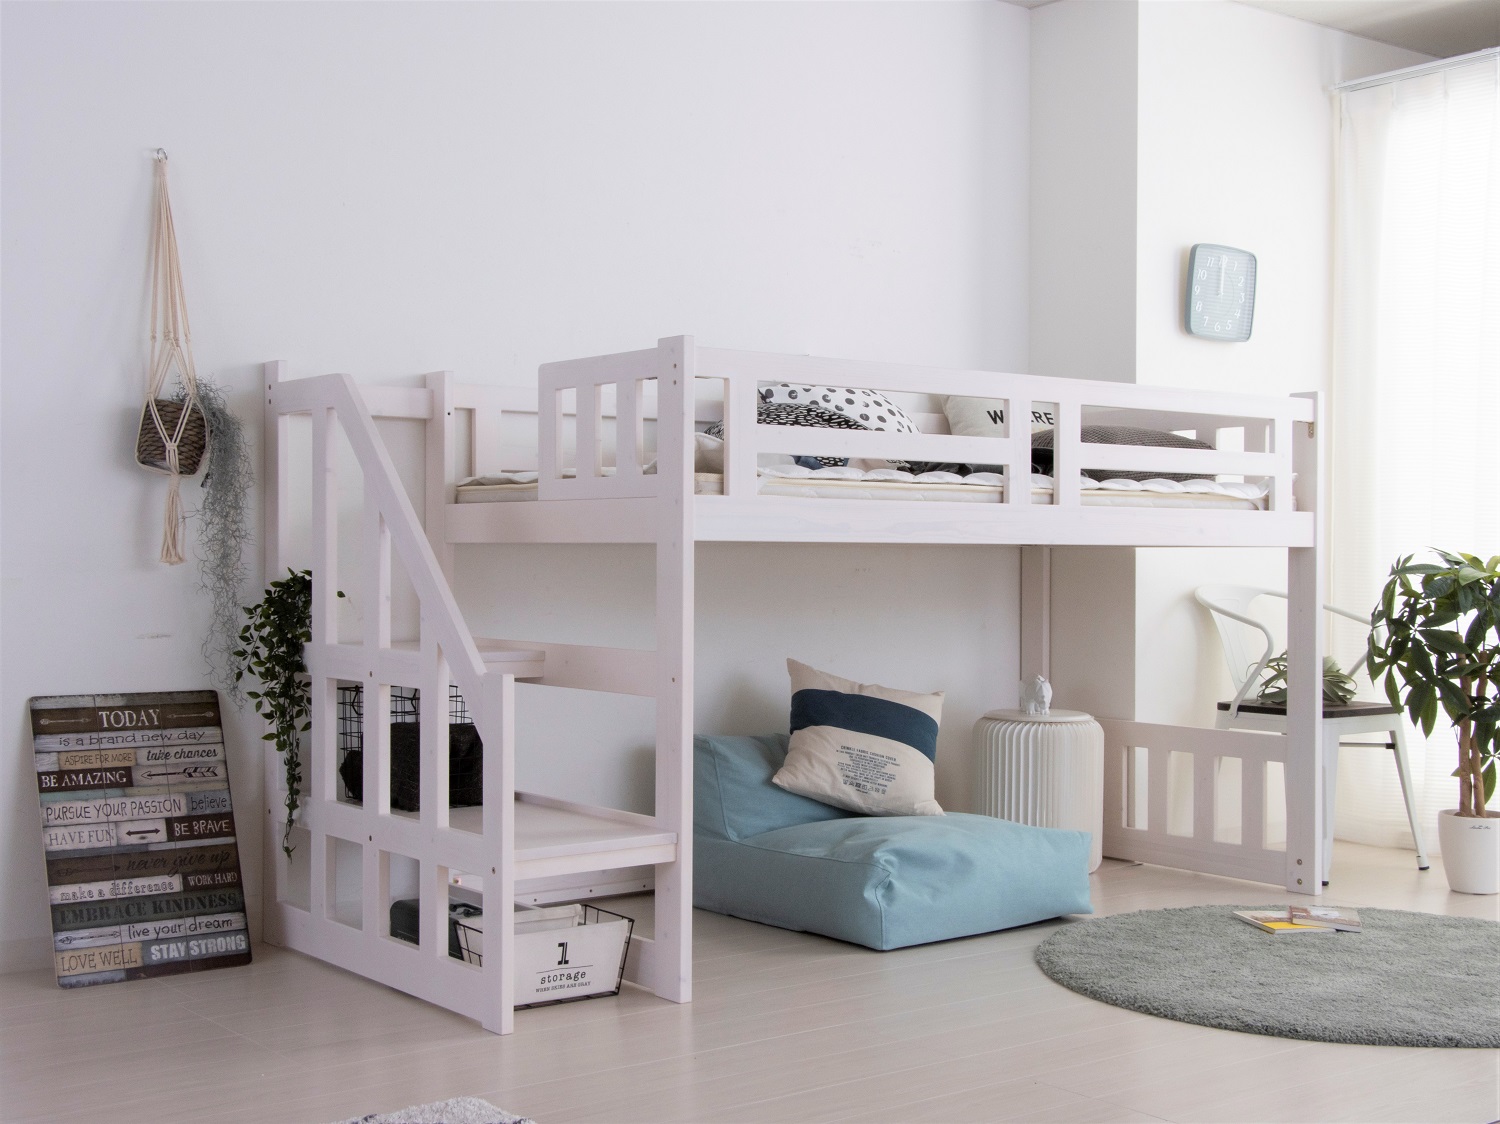 一人暮らしに使えるショート丈ロフトベッド - 大阪府の家具